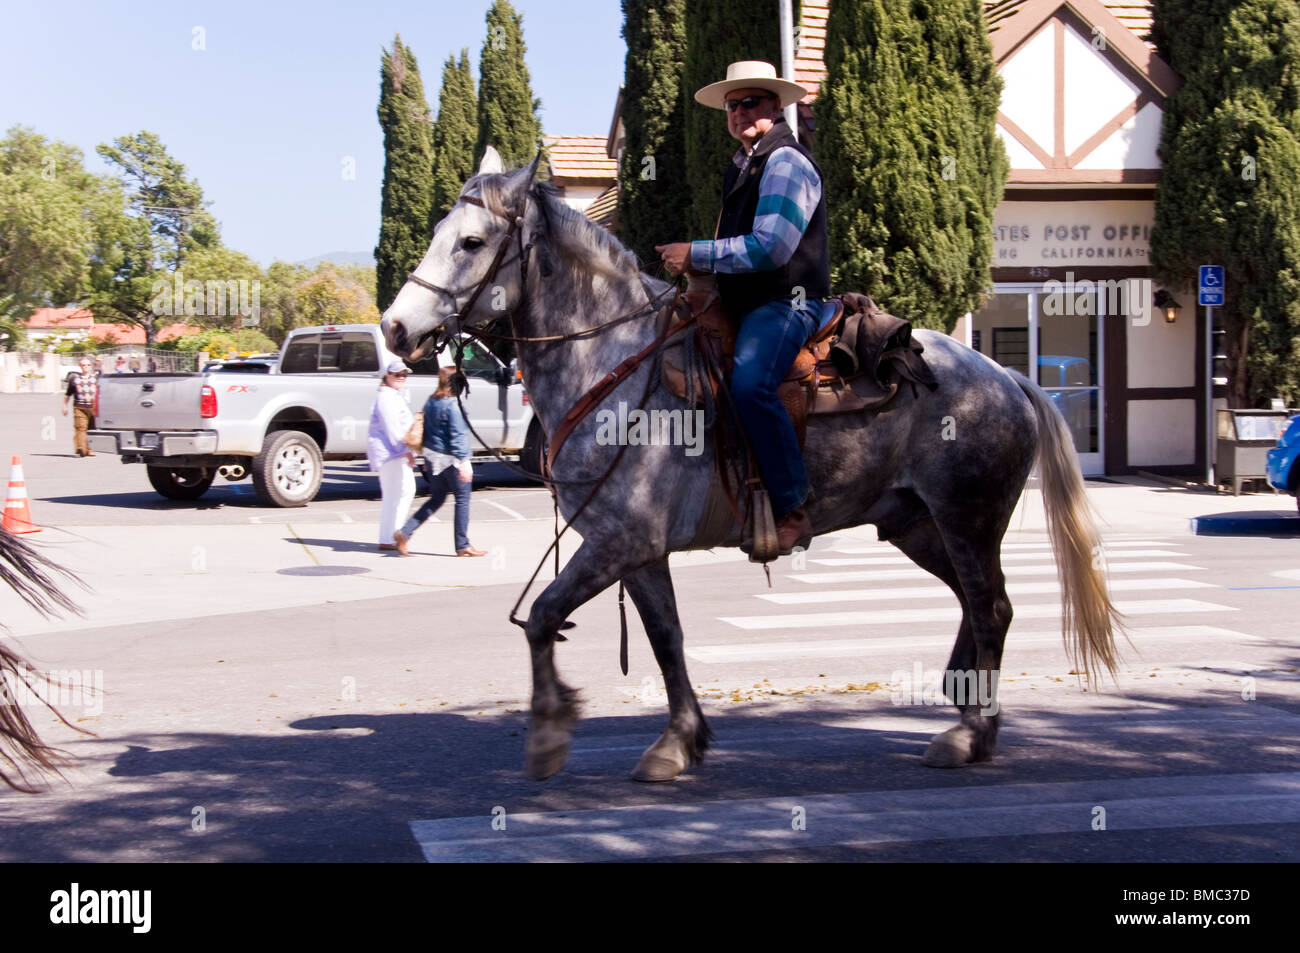 Cowboy riding horse, Solvang, California, USA Stock Photo